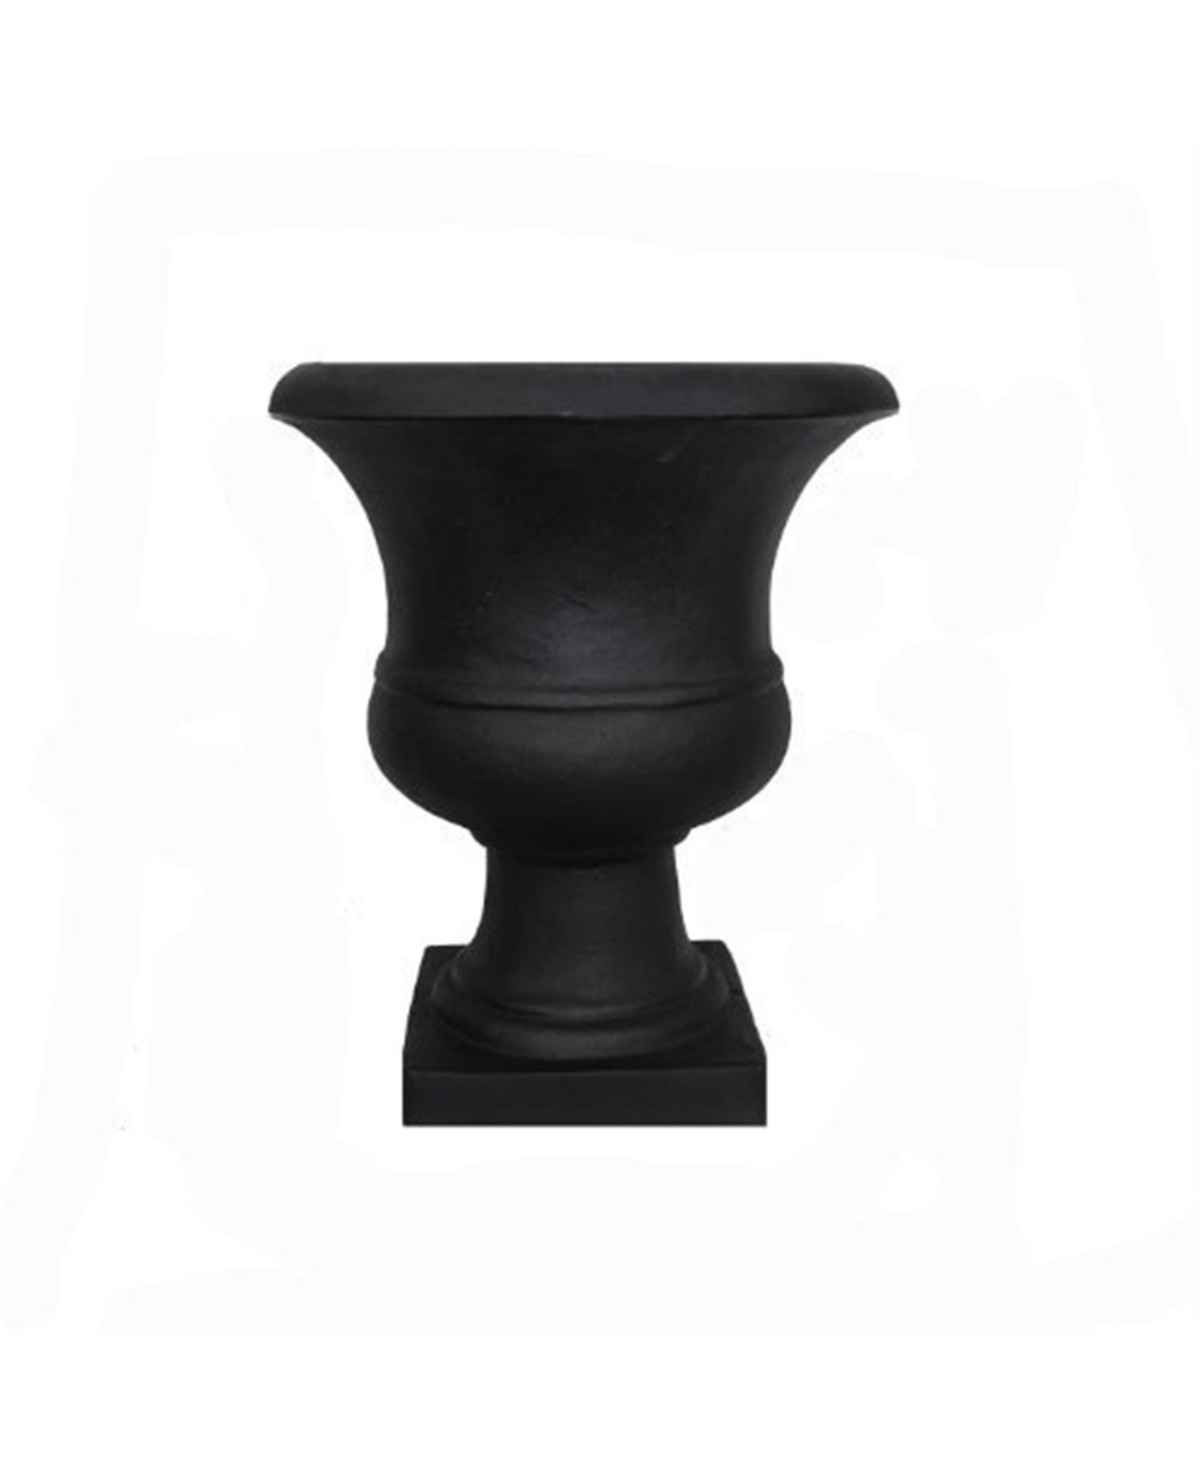 Outdoor Urn, 17-Inch, Black TUSUR01BK - Black